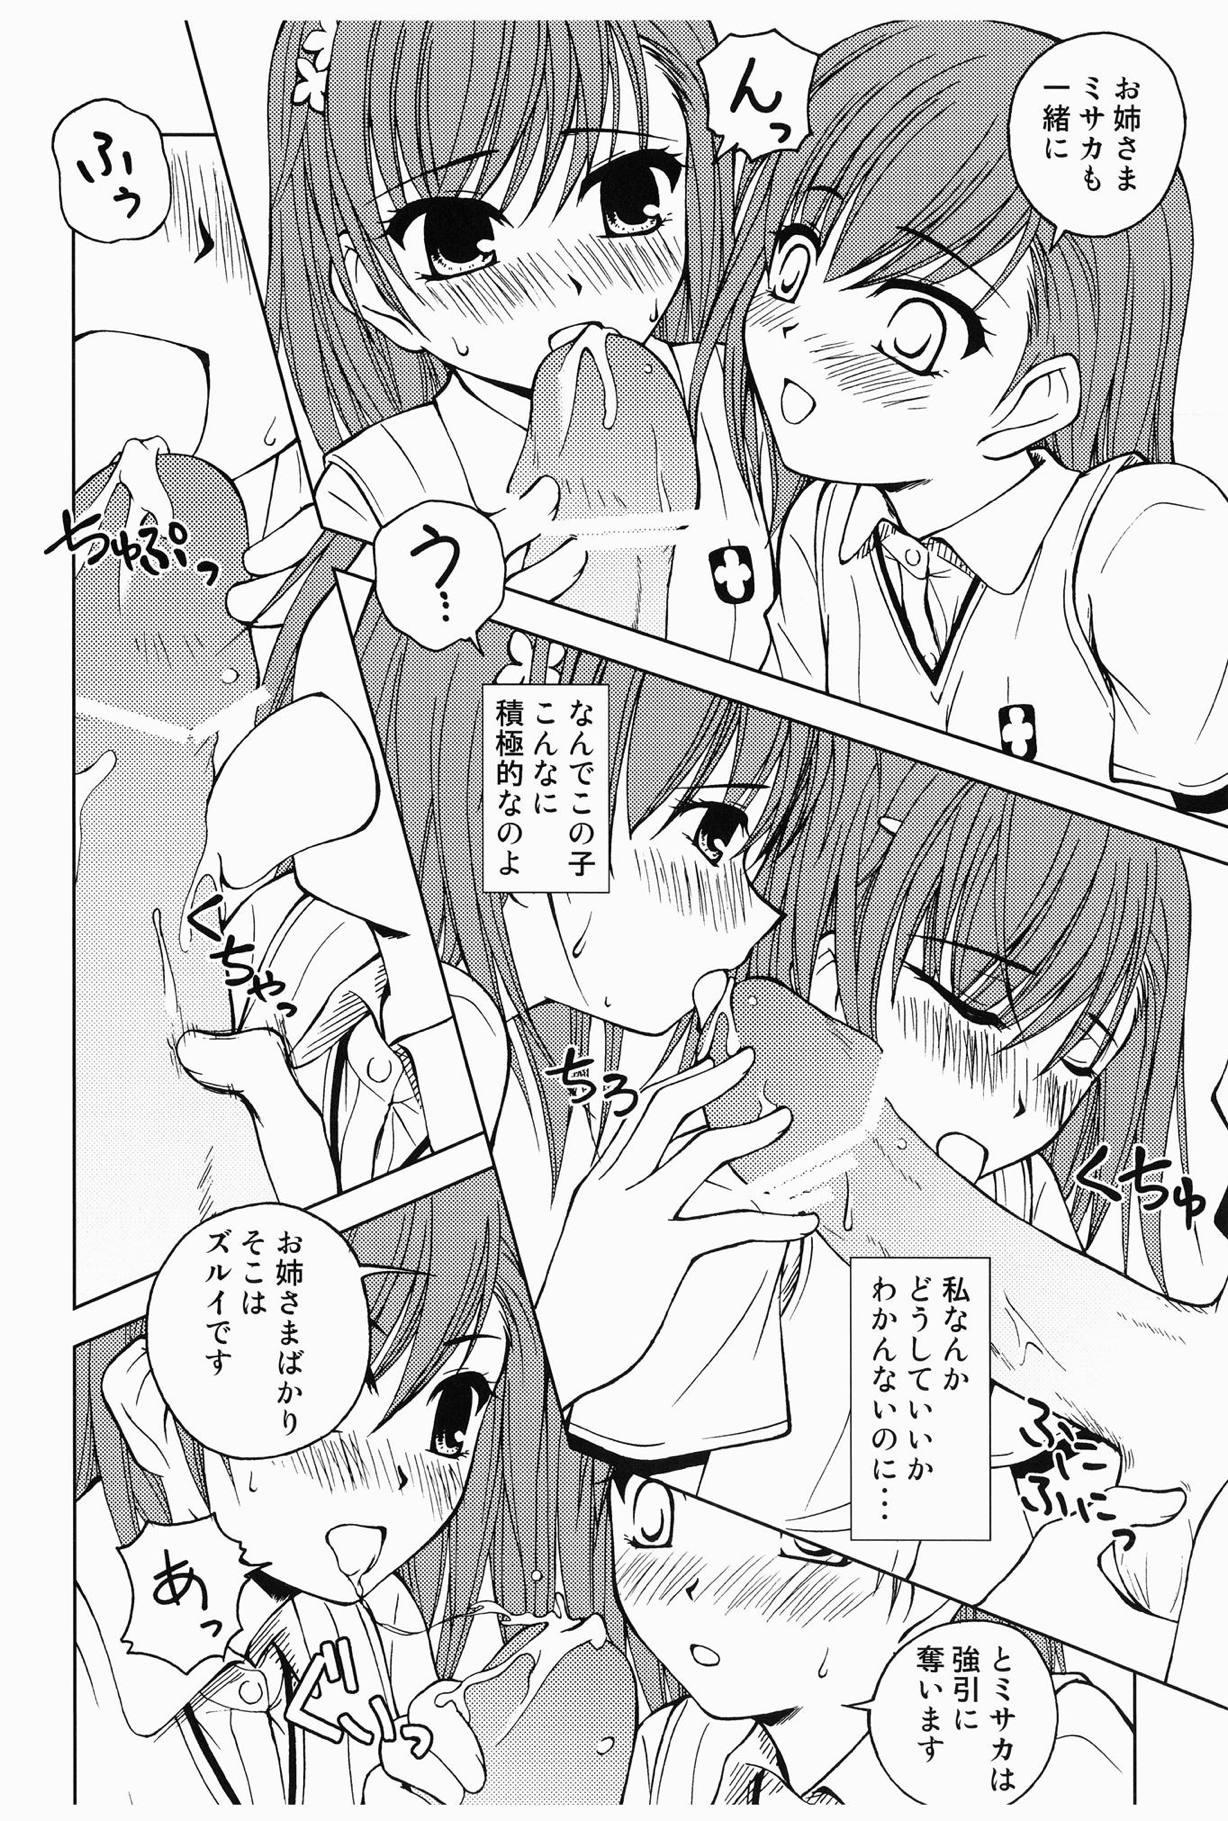 Girlongirl Touma to Misaka to Railgun - Toaru kagaku no railgun Cdmx - Page 7